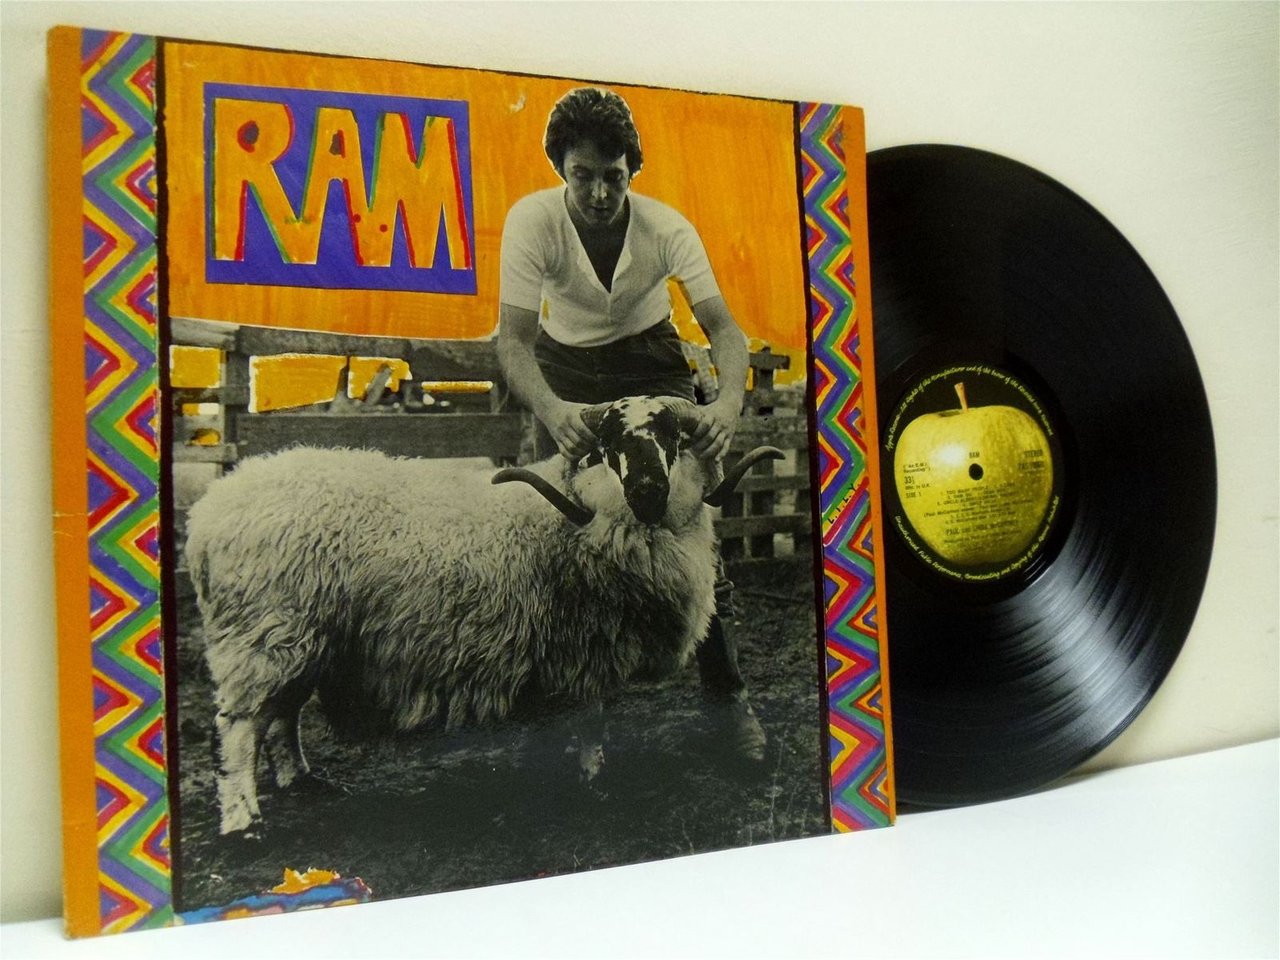 Ram альбомы. Обложка альбома Ram пола Маккартни. CD Paul MCCARTNEY 1971. Ram album Paul MCCARTNEY 1971. Linda MCCARTNEY 1971.